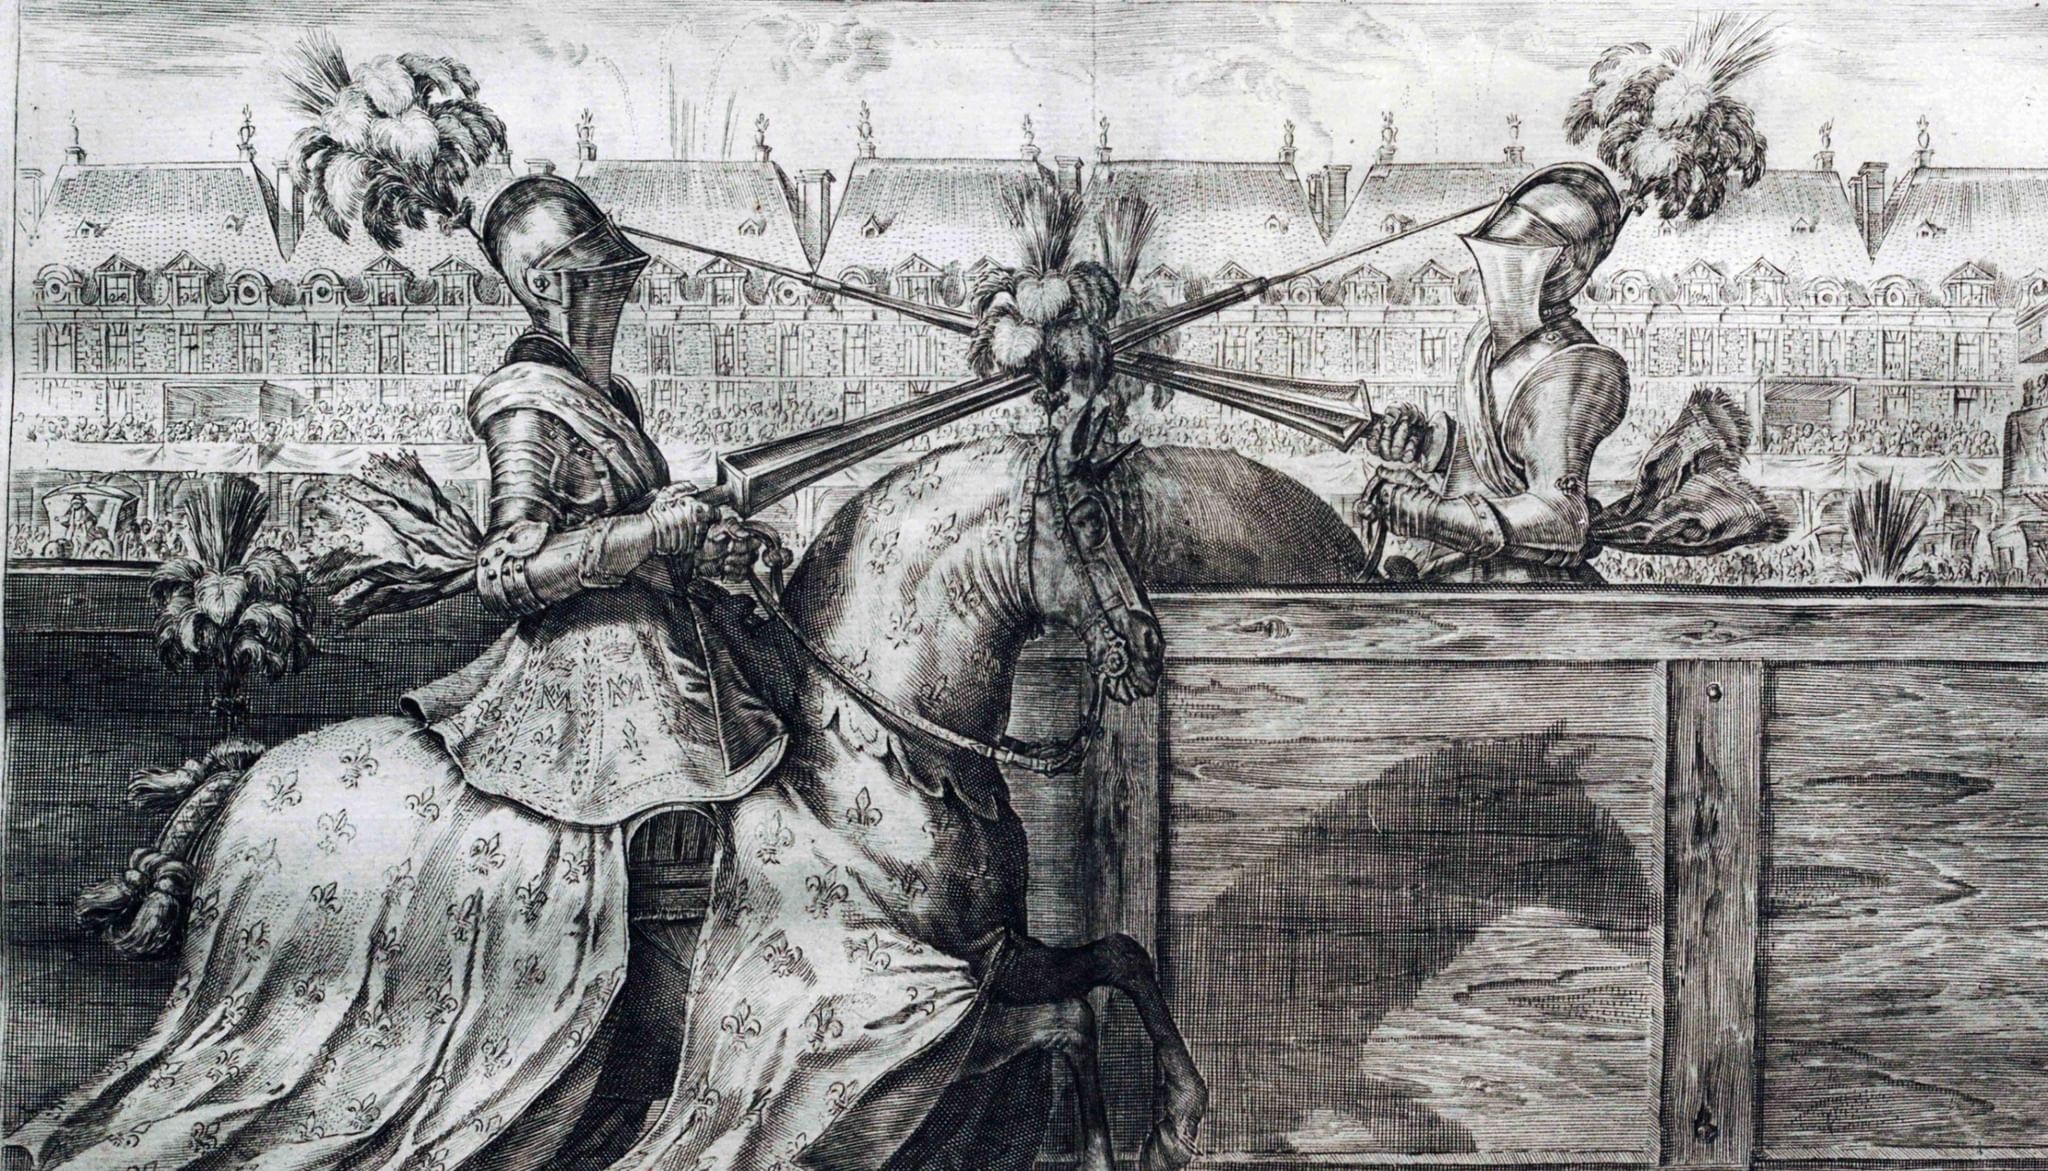 Дуэль 18. Антуан де Плювинель. Судебные Поединки в средние века. Выставка дуэль.